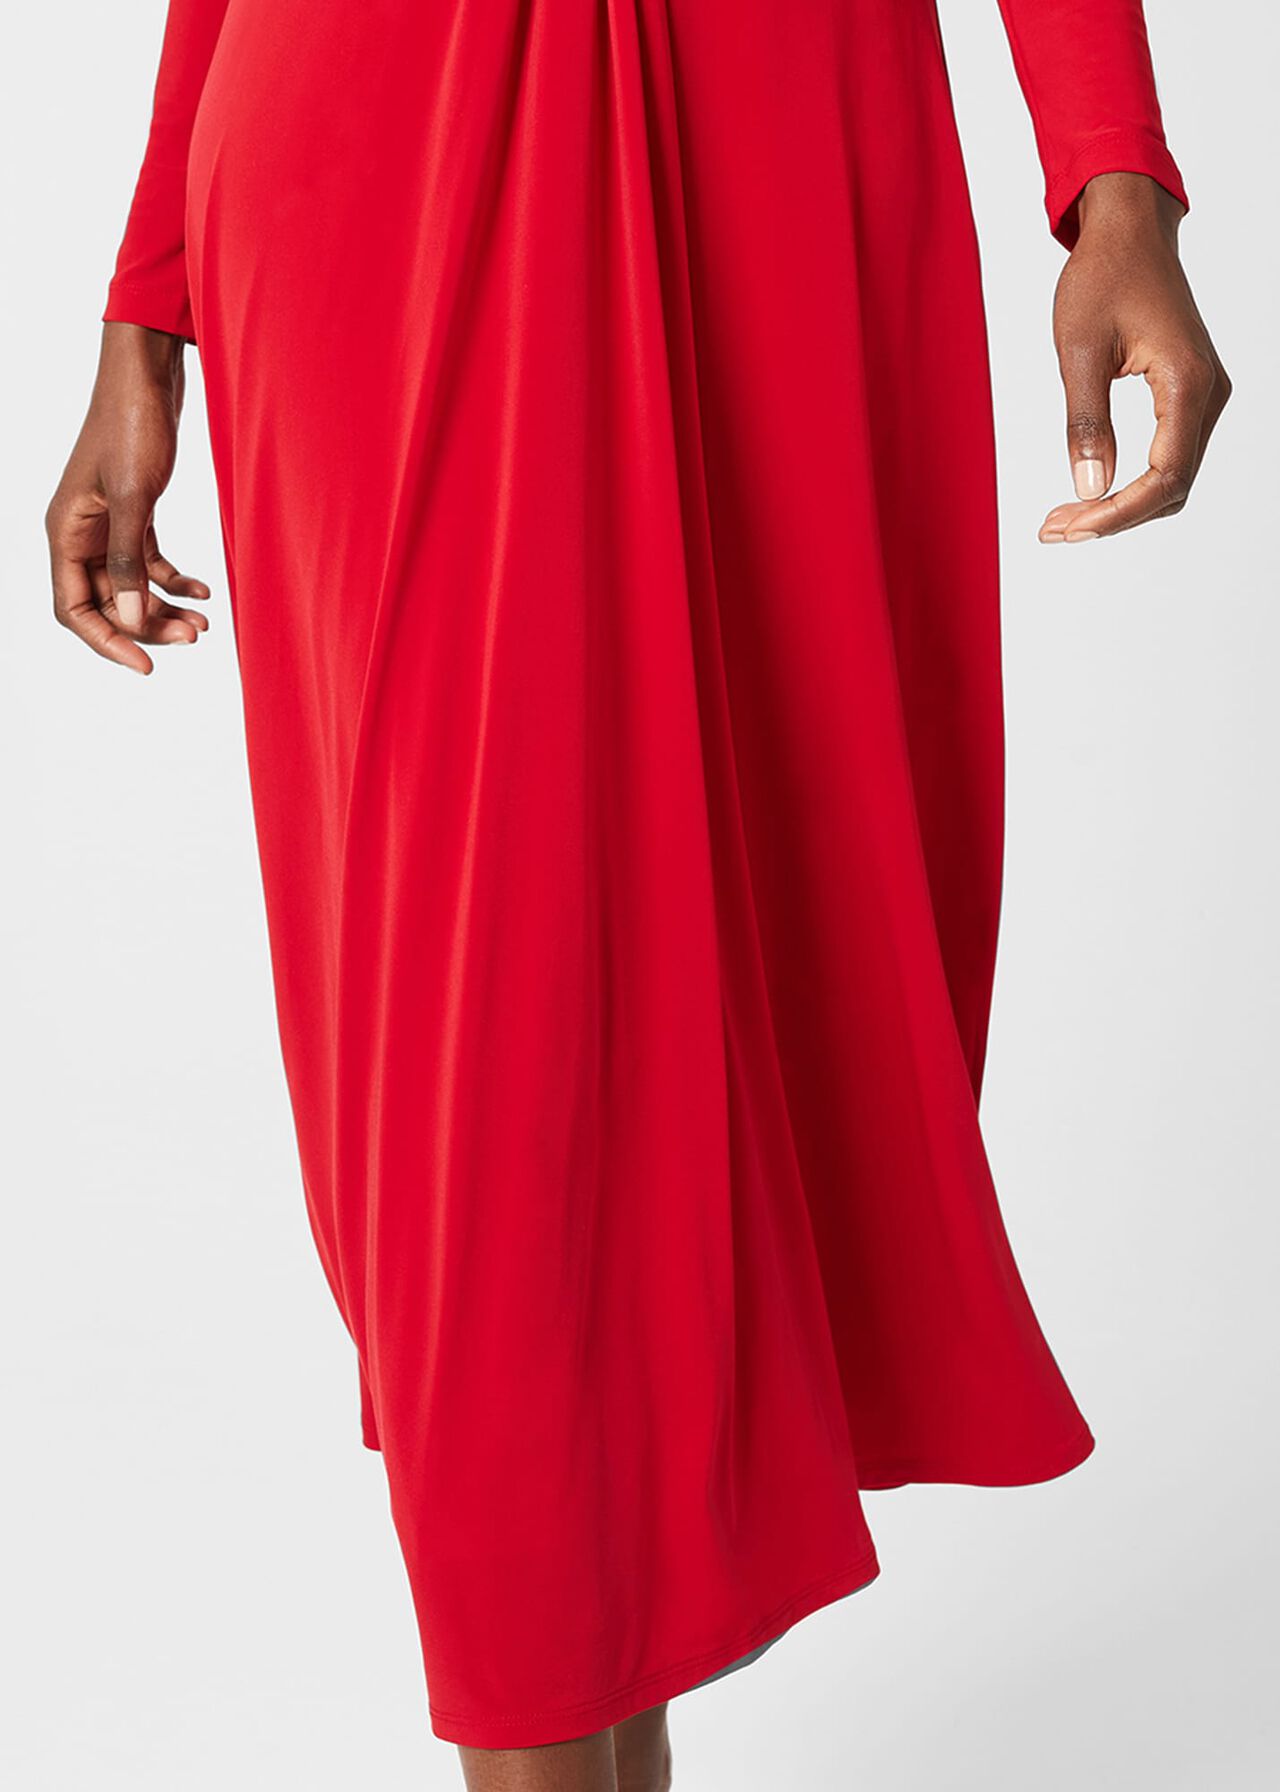 Uma Jersey Dress, Poppy Red, hi-res